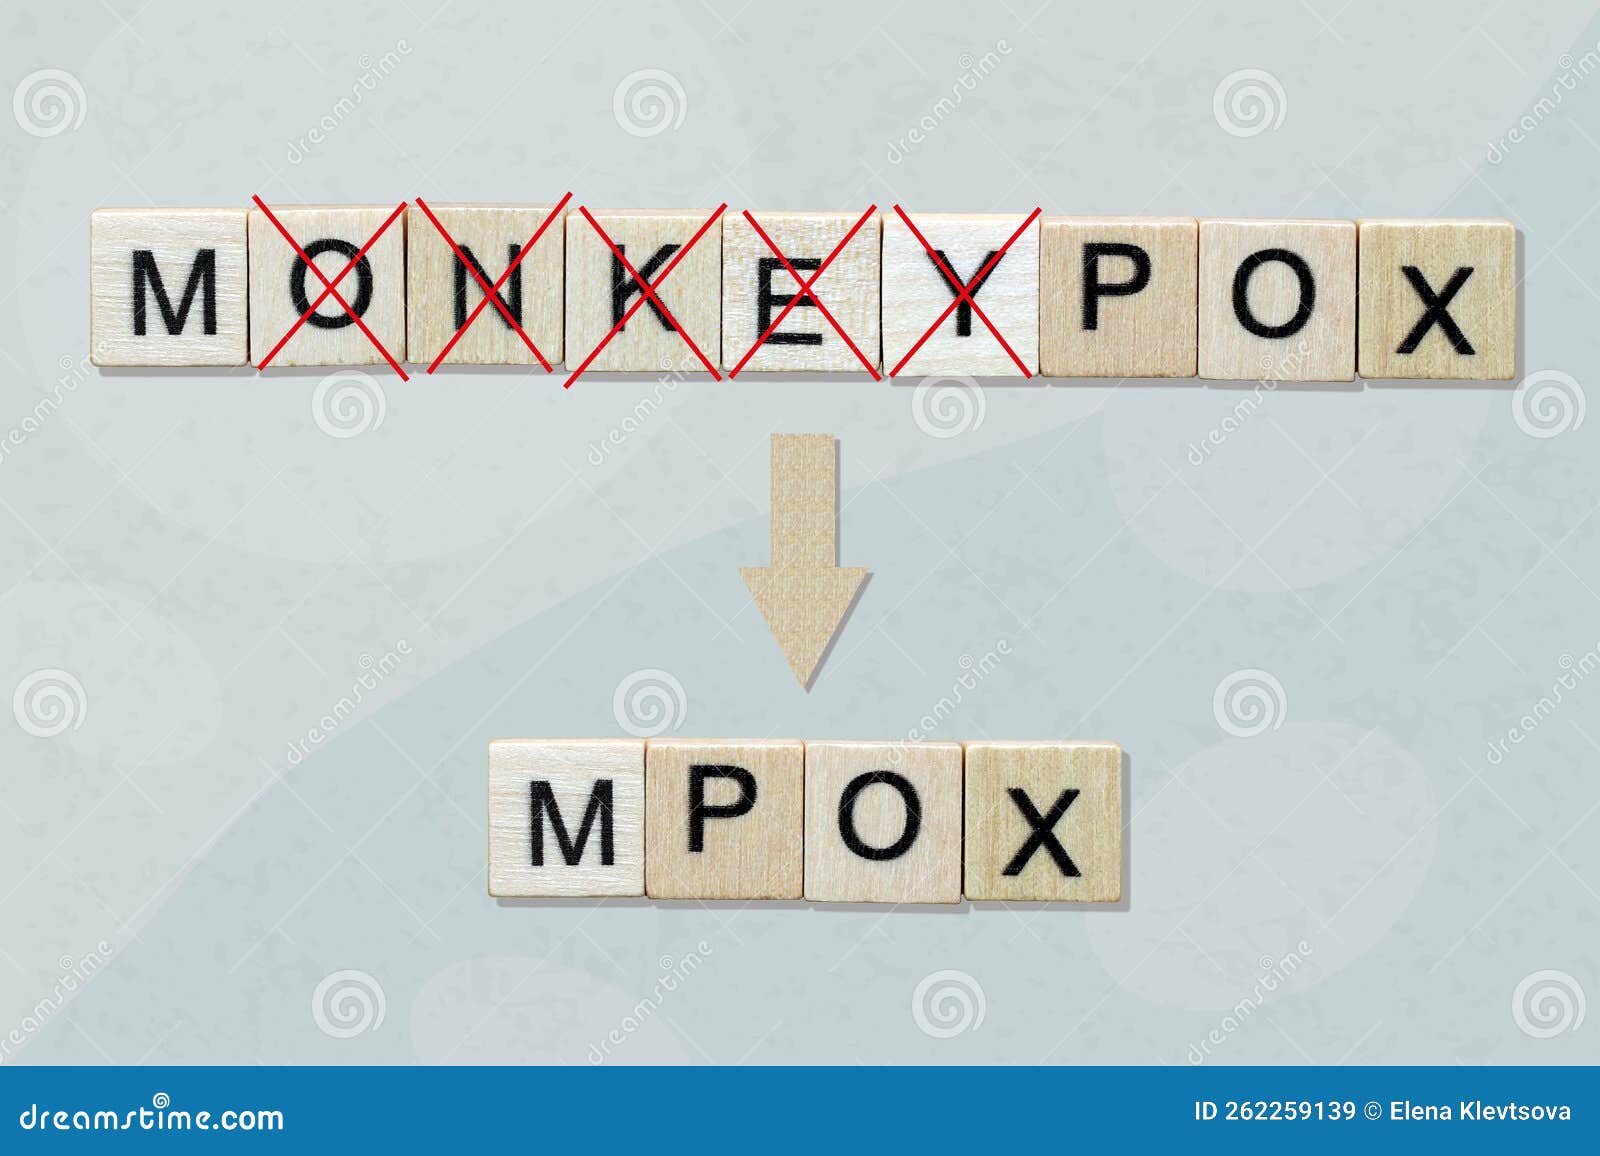 renaming the disease monkeypox to mpox.